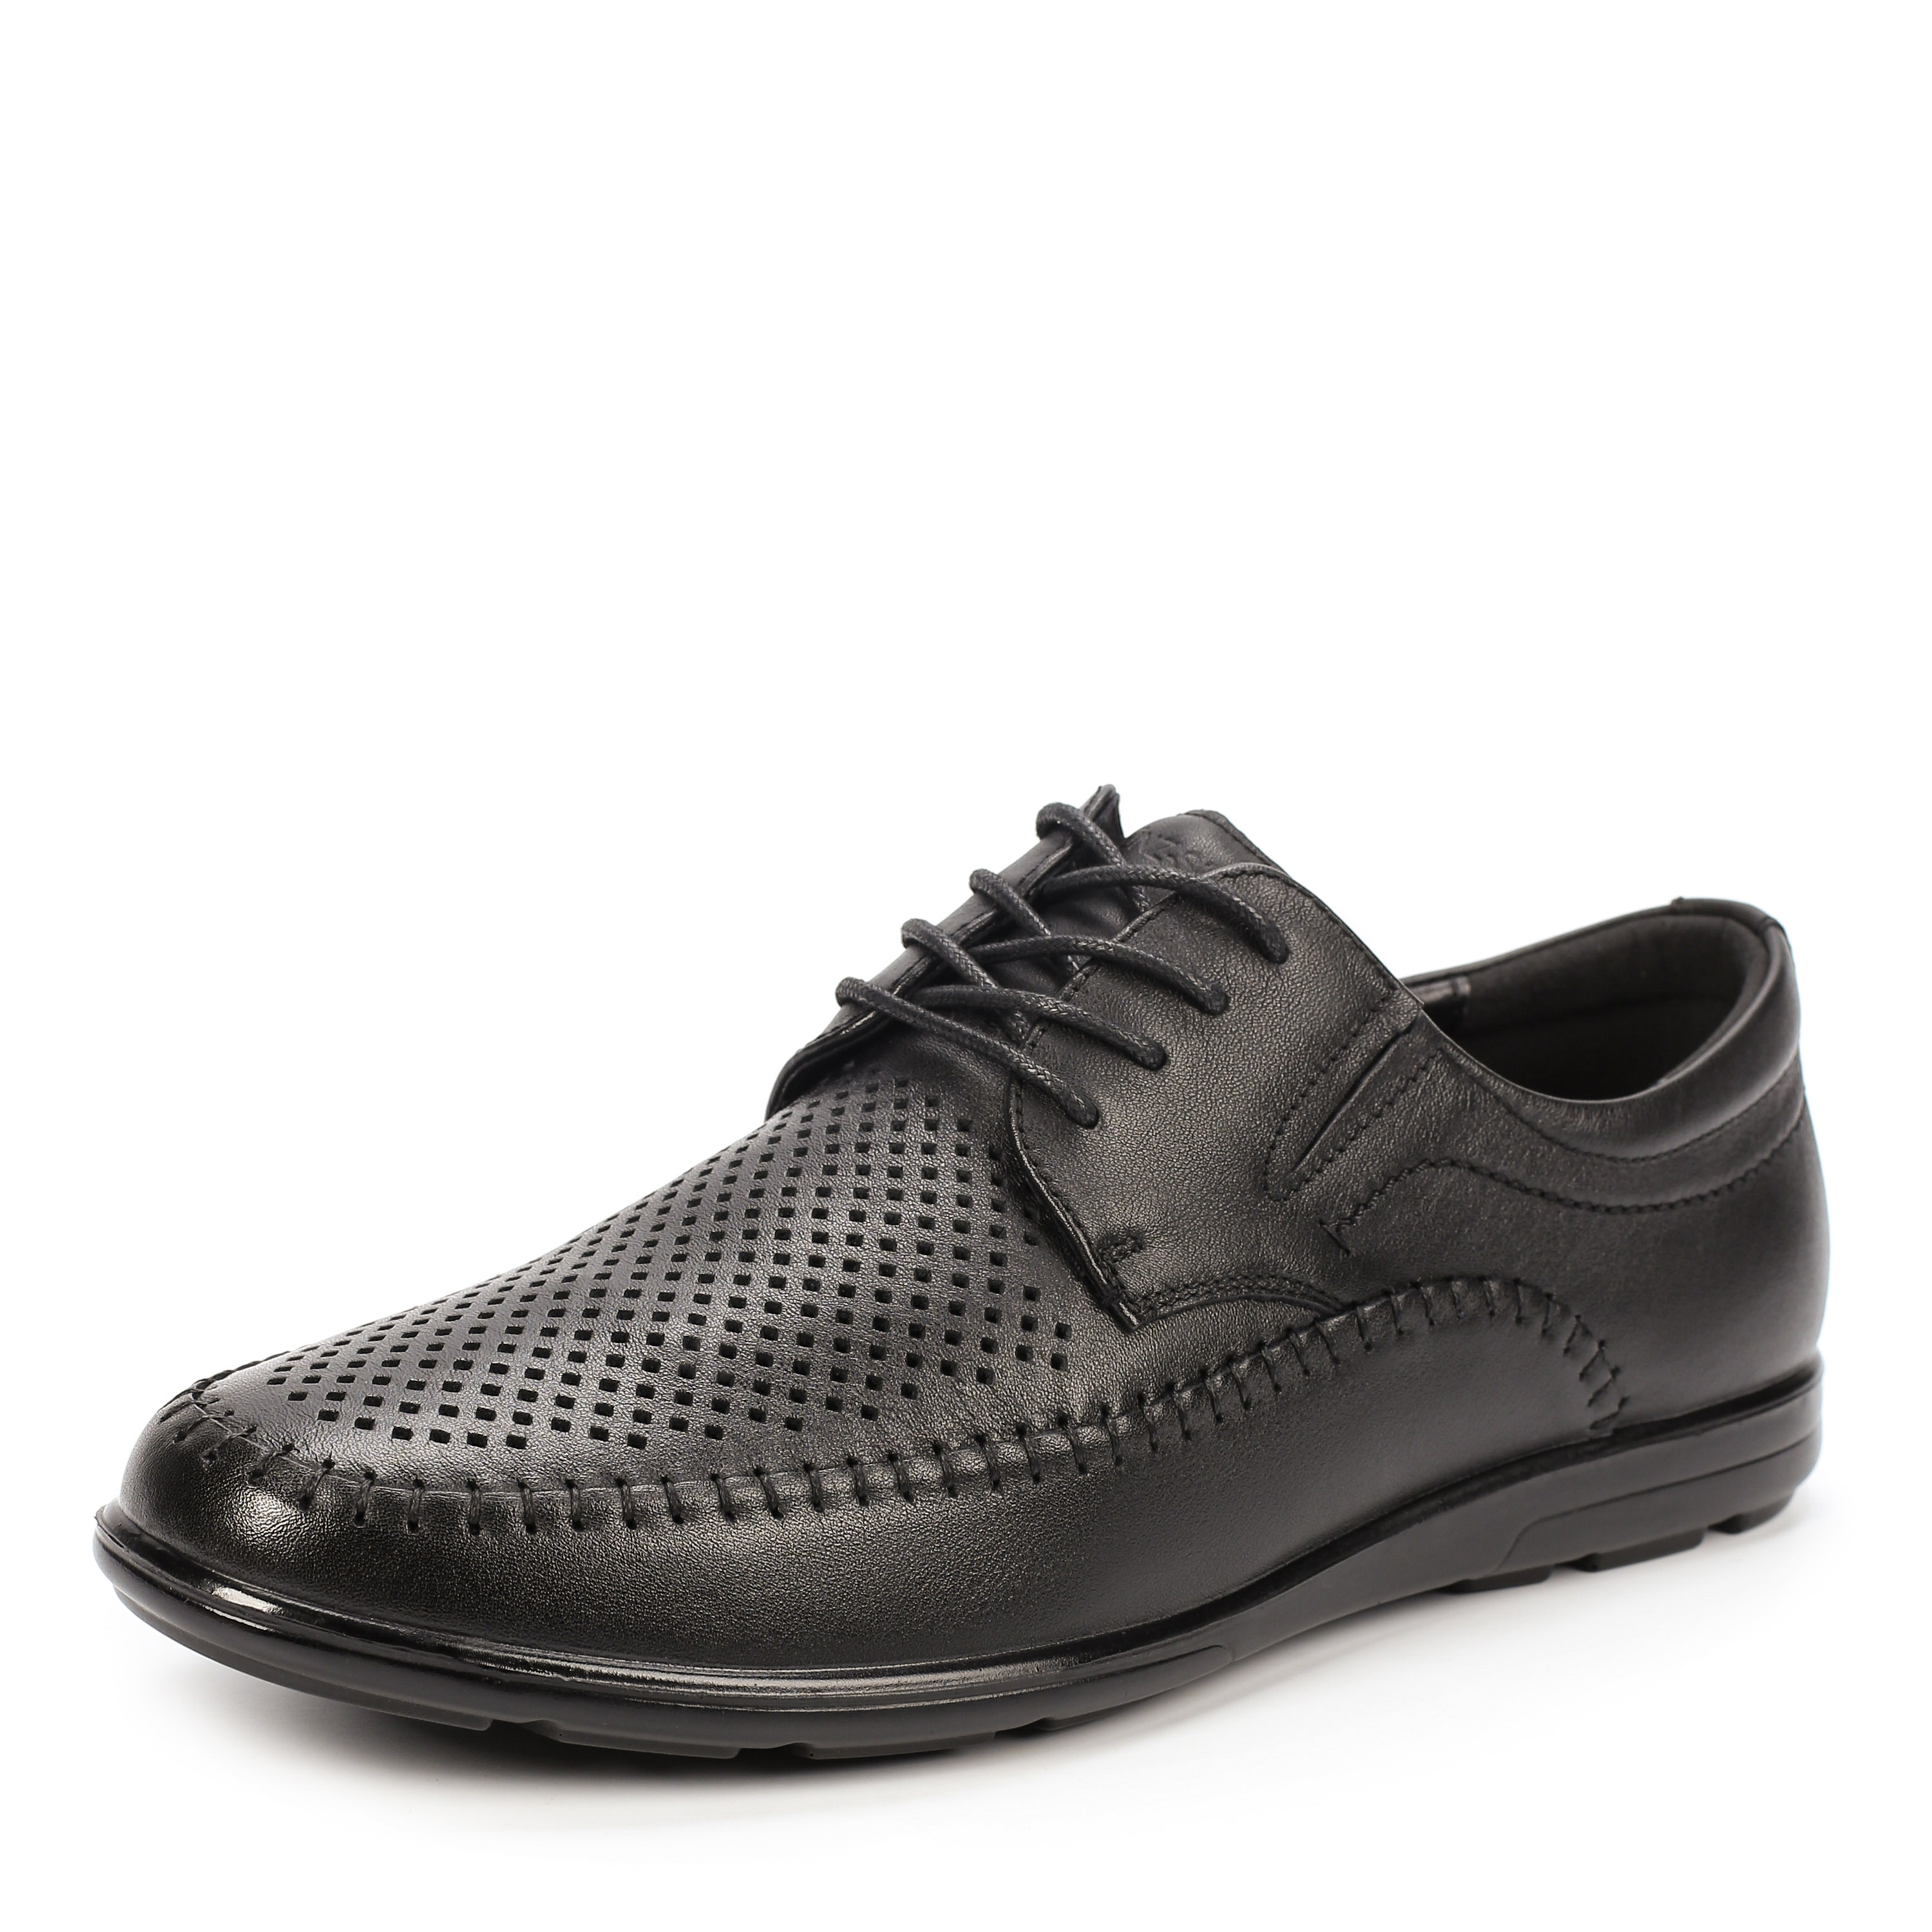 Туфли MUNZ Shoes 059-016A-1102 059-016A-1102, цвет черный, размер 40 полуботинки - фото 2